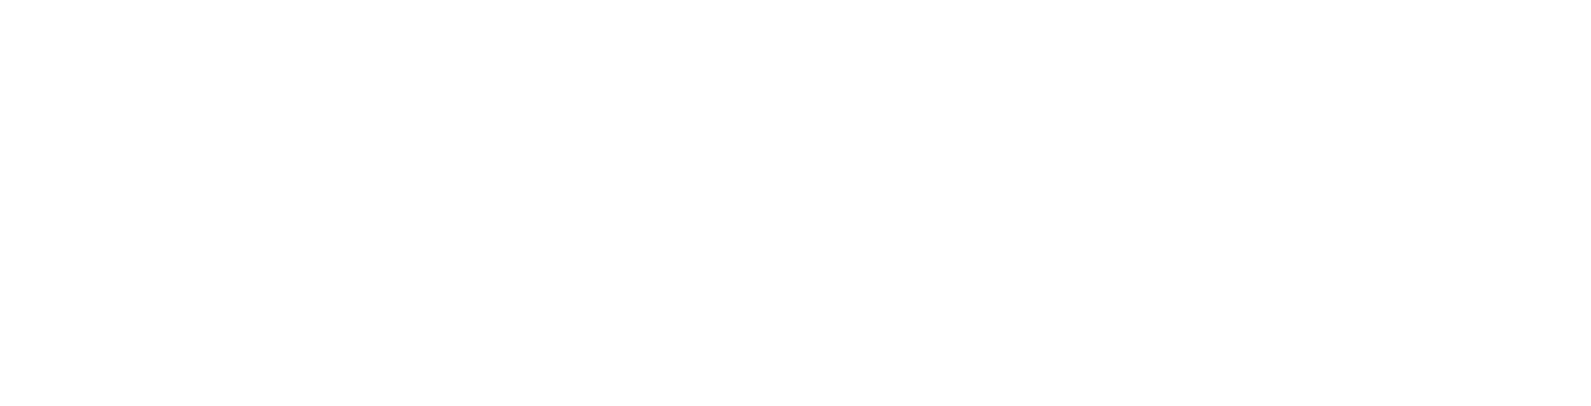 Valmet
 logo grand pour les fonds sombres (PNG transparent)